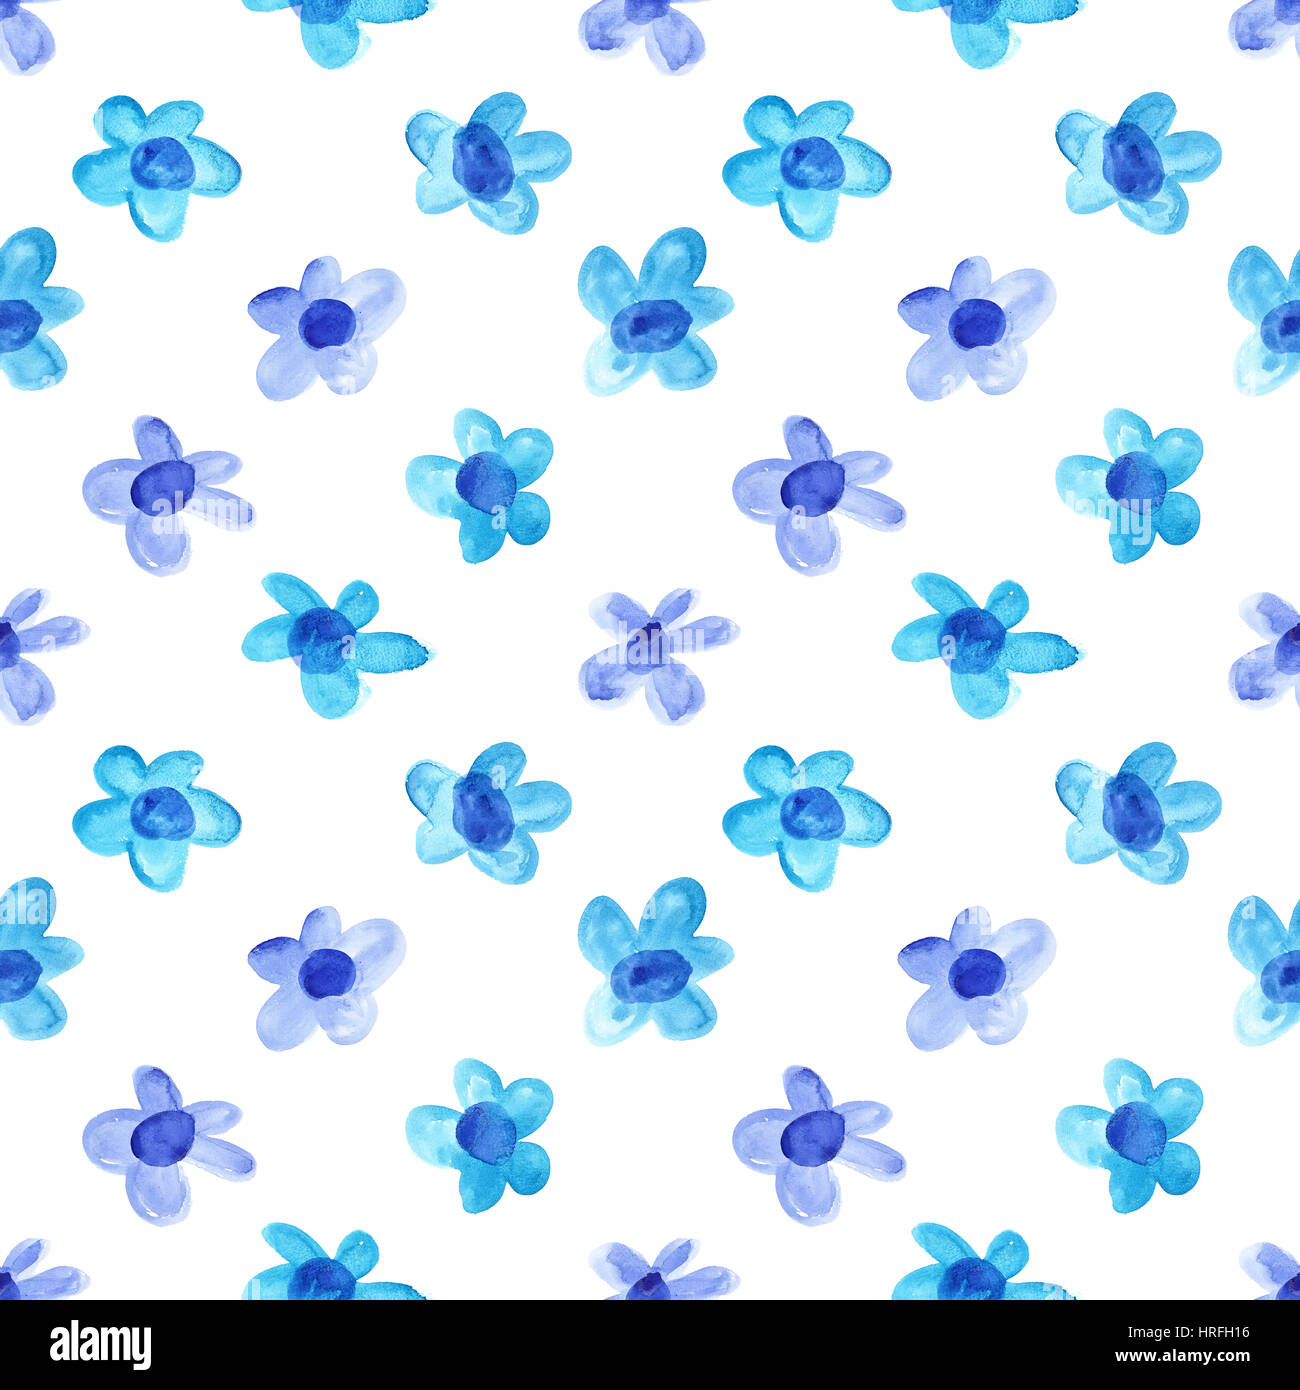 Blue semplice acquerello fiori - raster pattern senza giunture Foto Stock